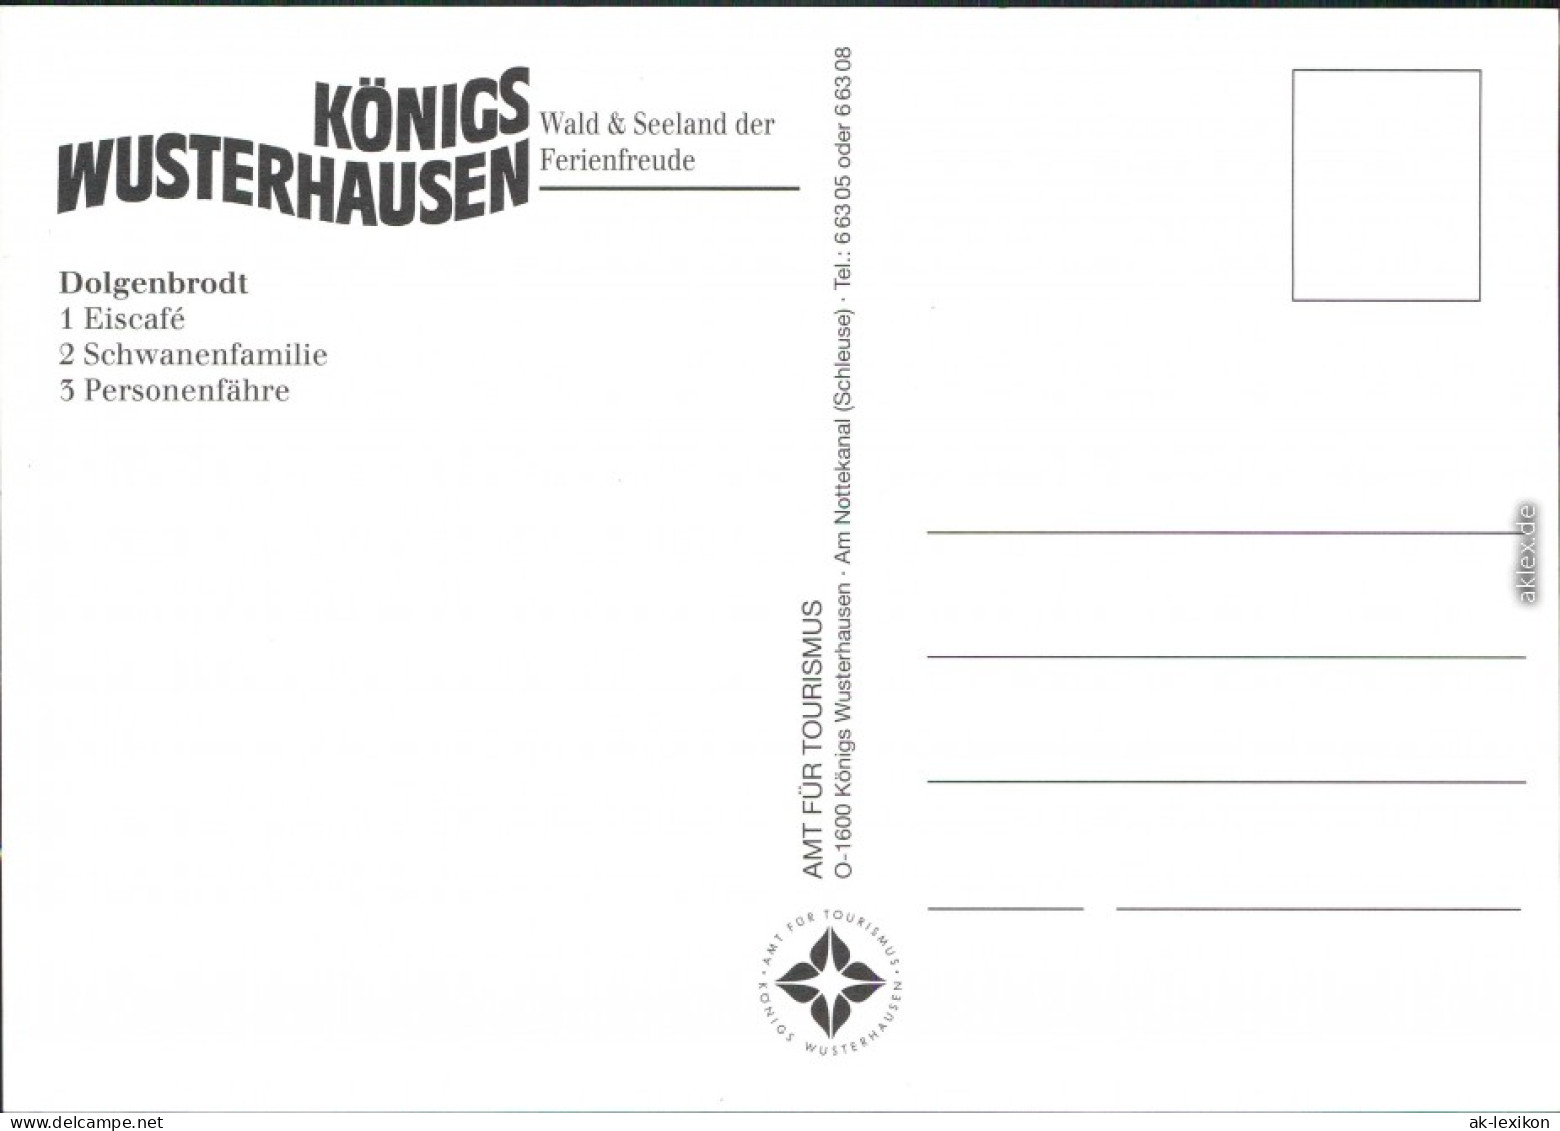 Königs Wusterhausen Dolgenbrodt Eiscafé, Schwanenfamilie, Personenfähre 1995 - Koenigs-Wusterhausen